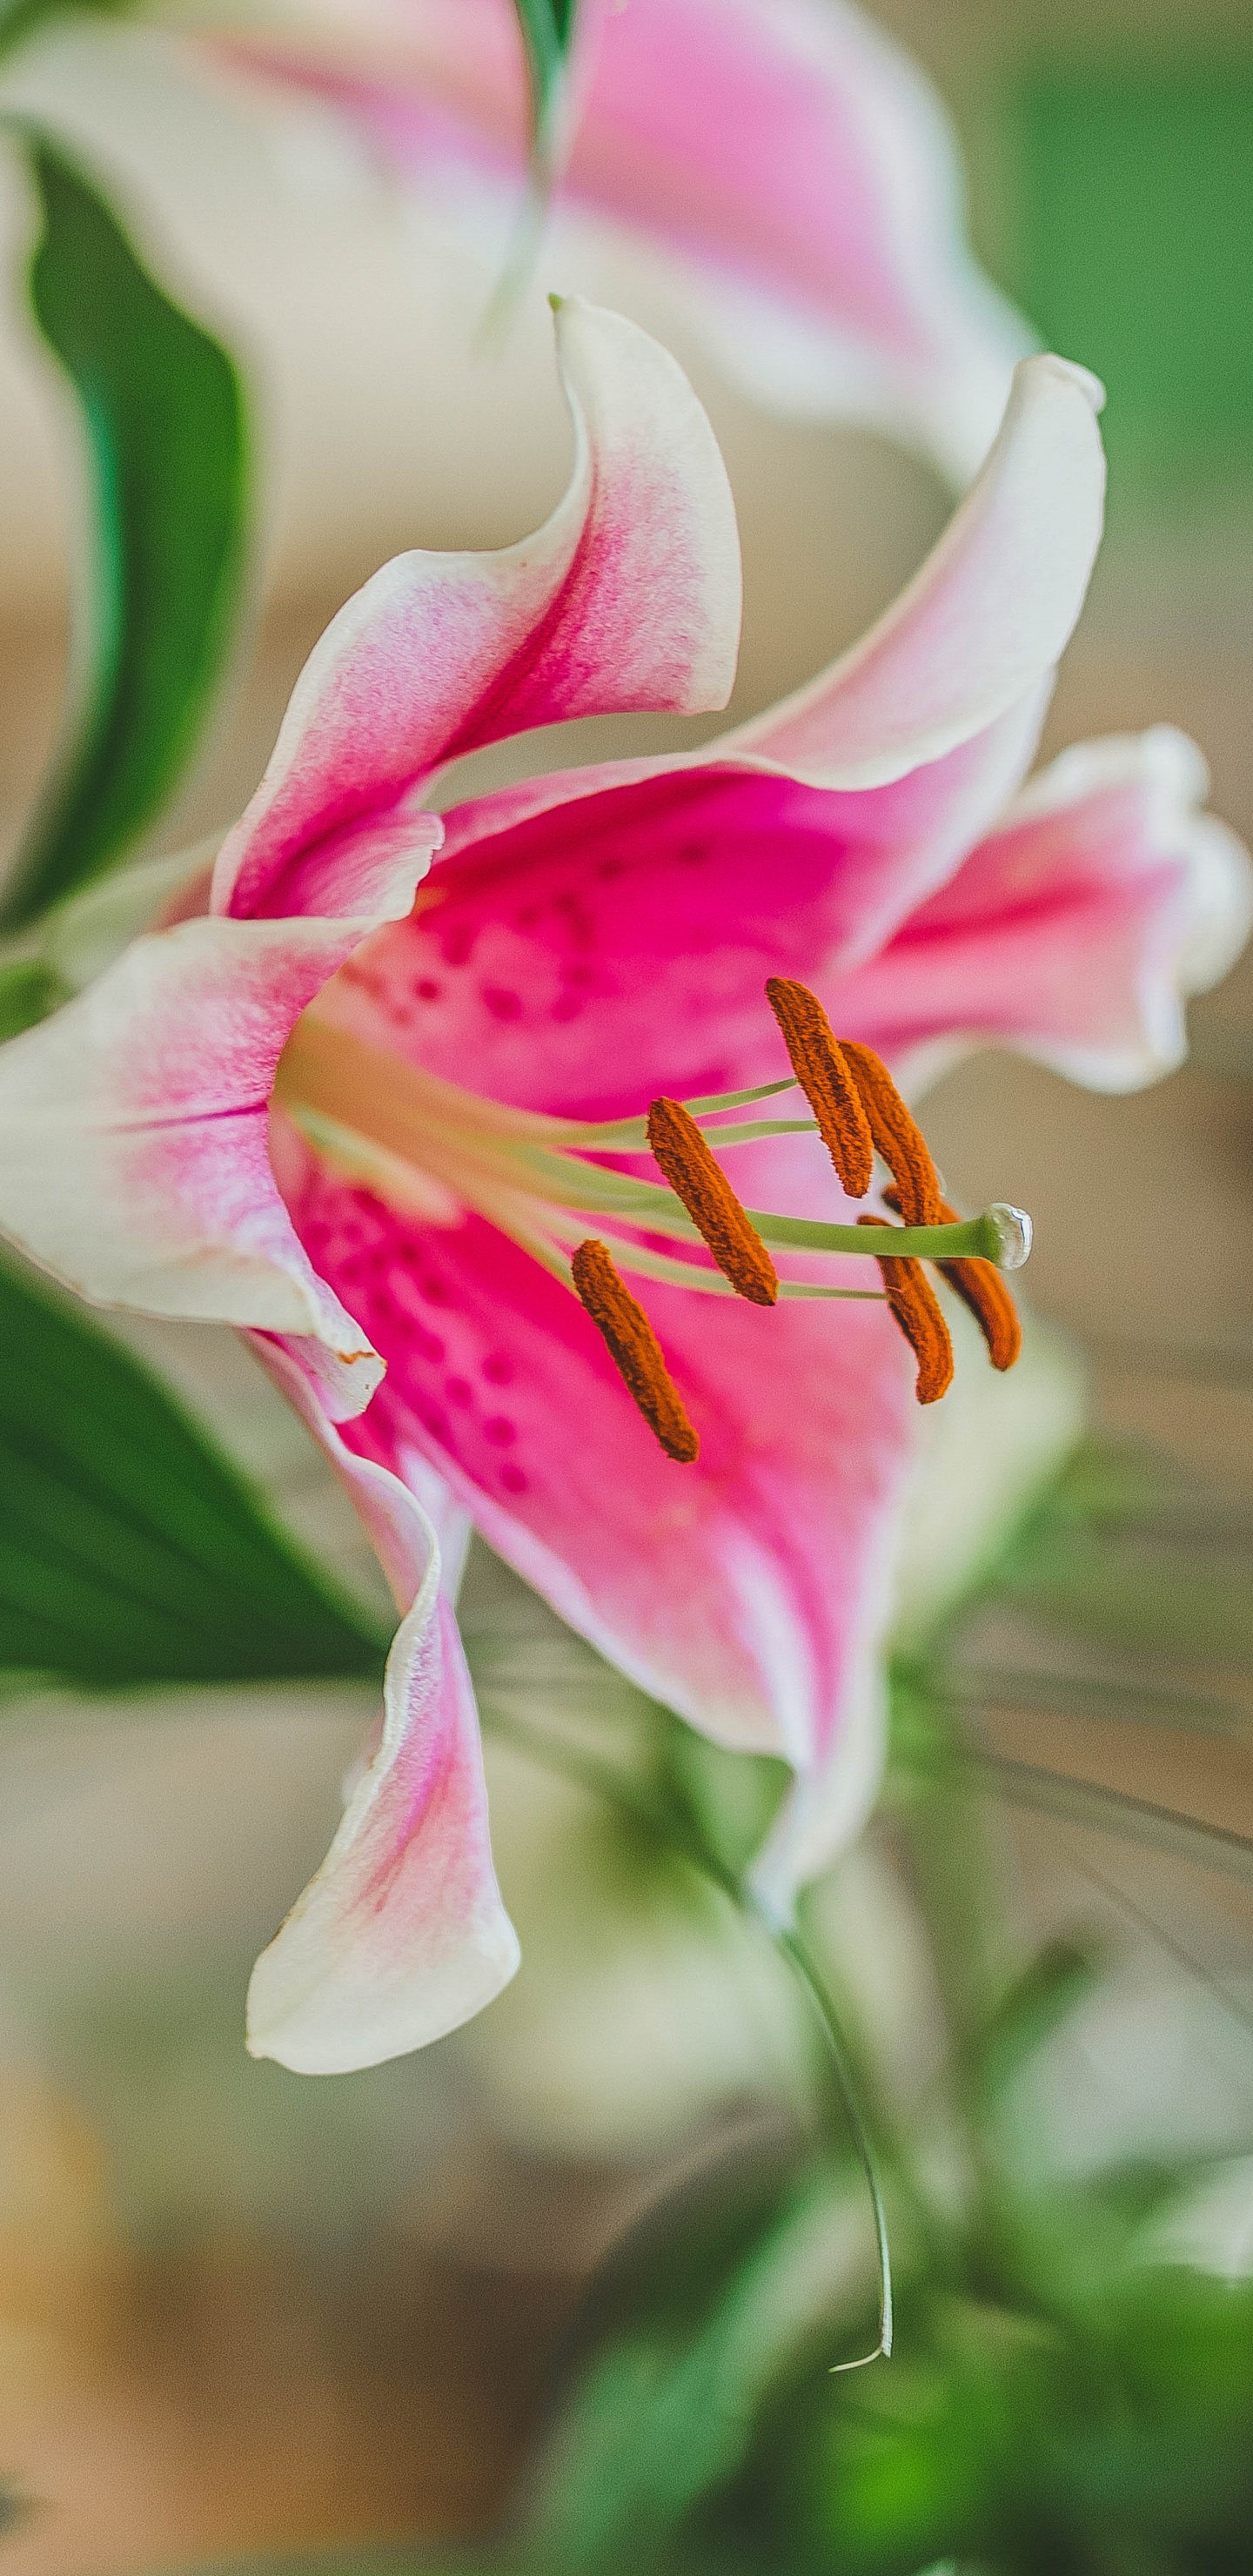 Pink and White Flower in Tilt Shift Lens. Wallpaper in 1440x2960 Resolution